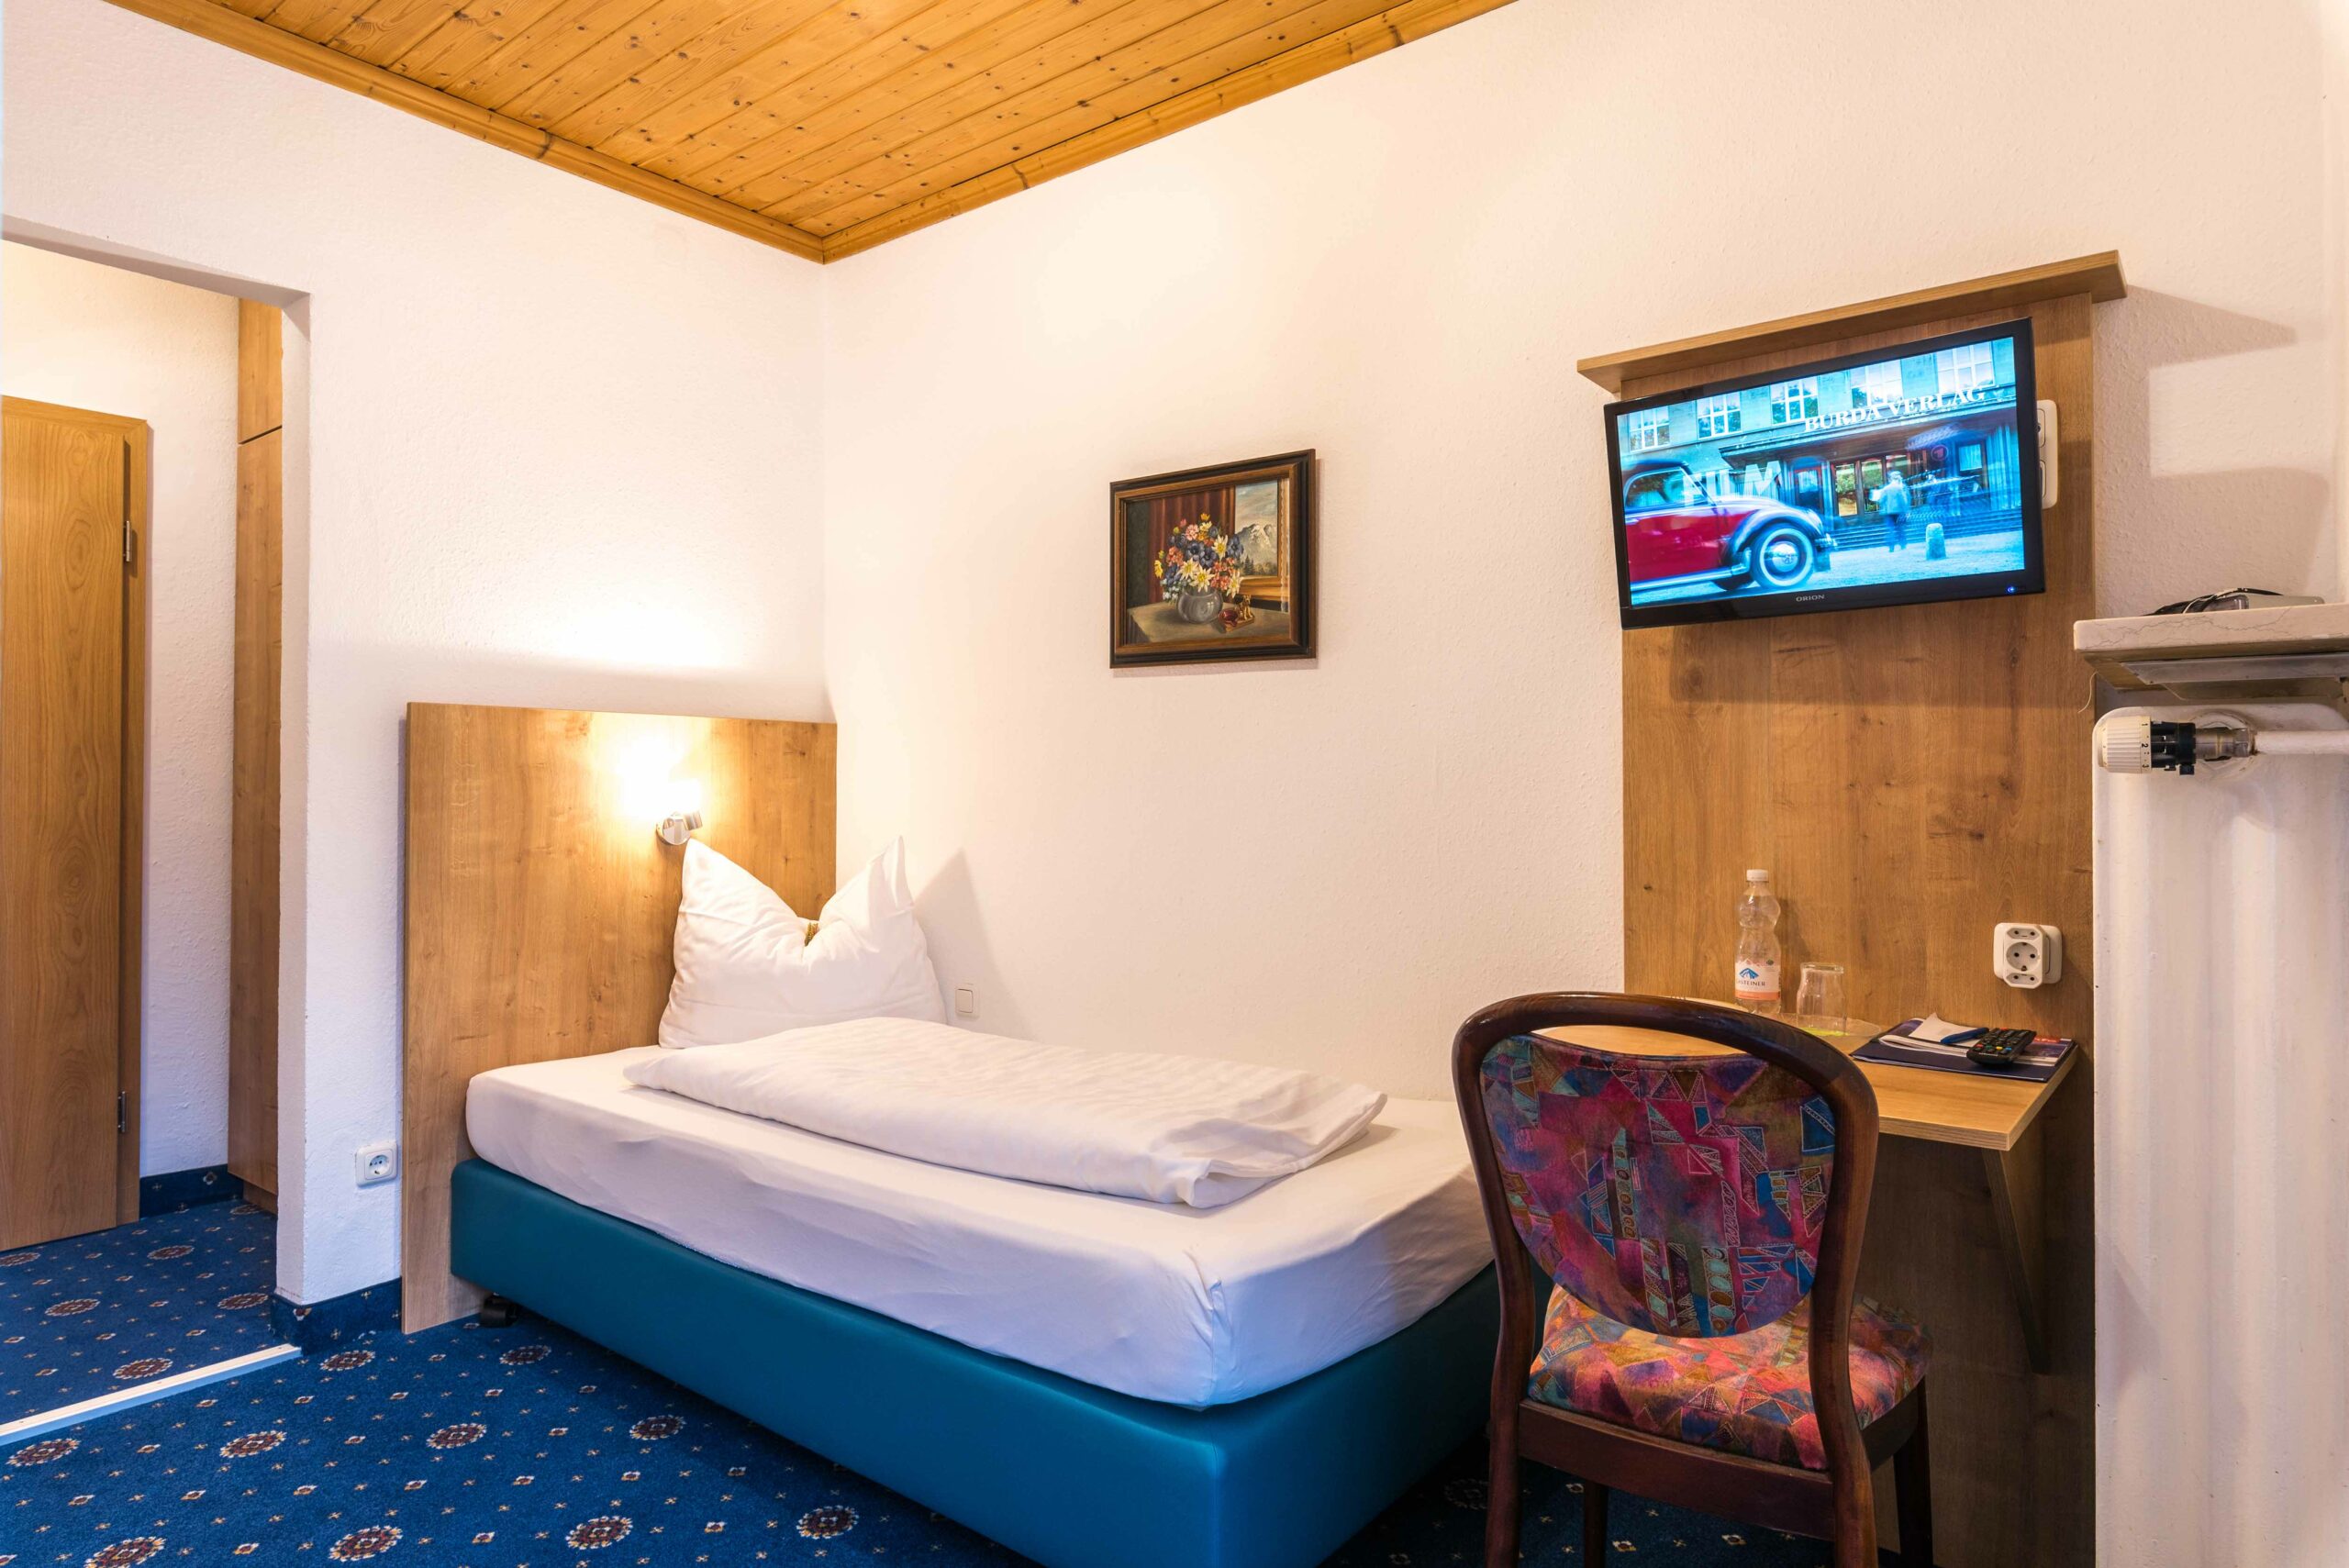 Einzelzimmer im Hotel Garni Almenrausch und Edelweiß in Garmisch-Patenkirchen